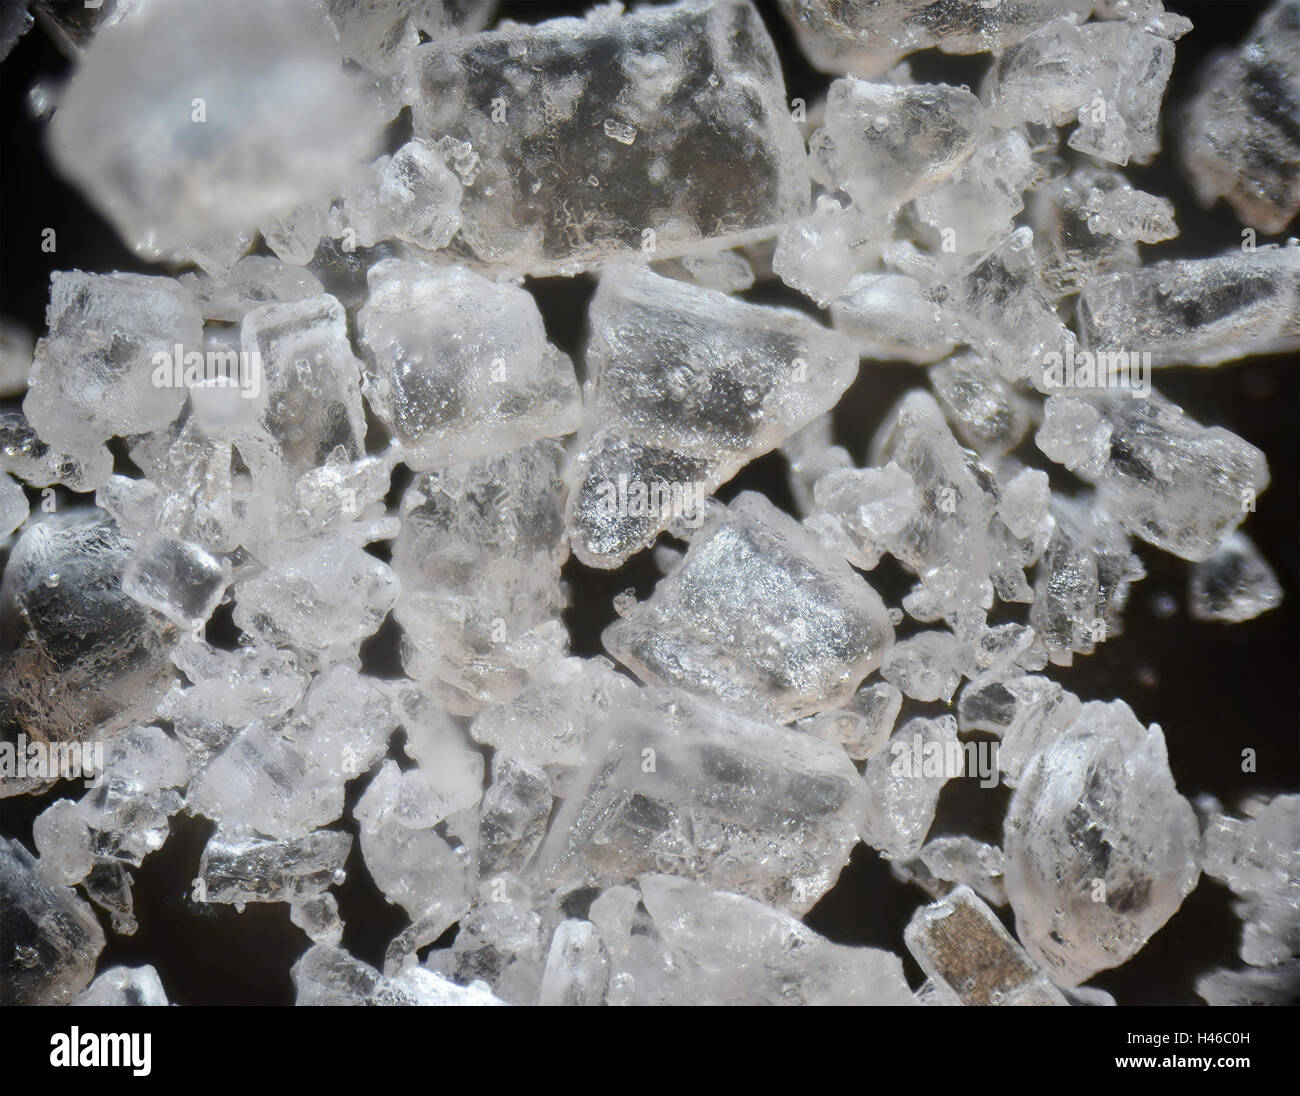 Mikroskopische Fotografie des Salzes Stockfoto